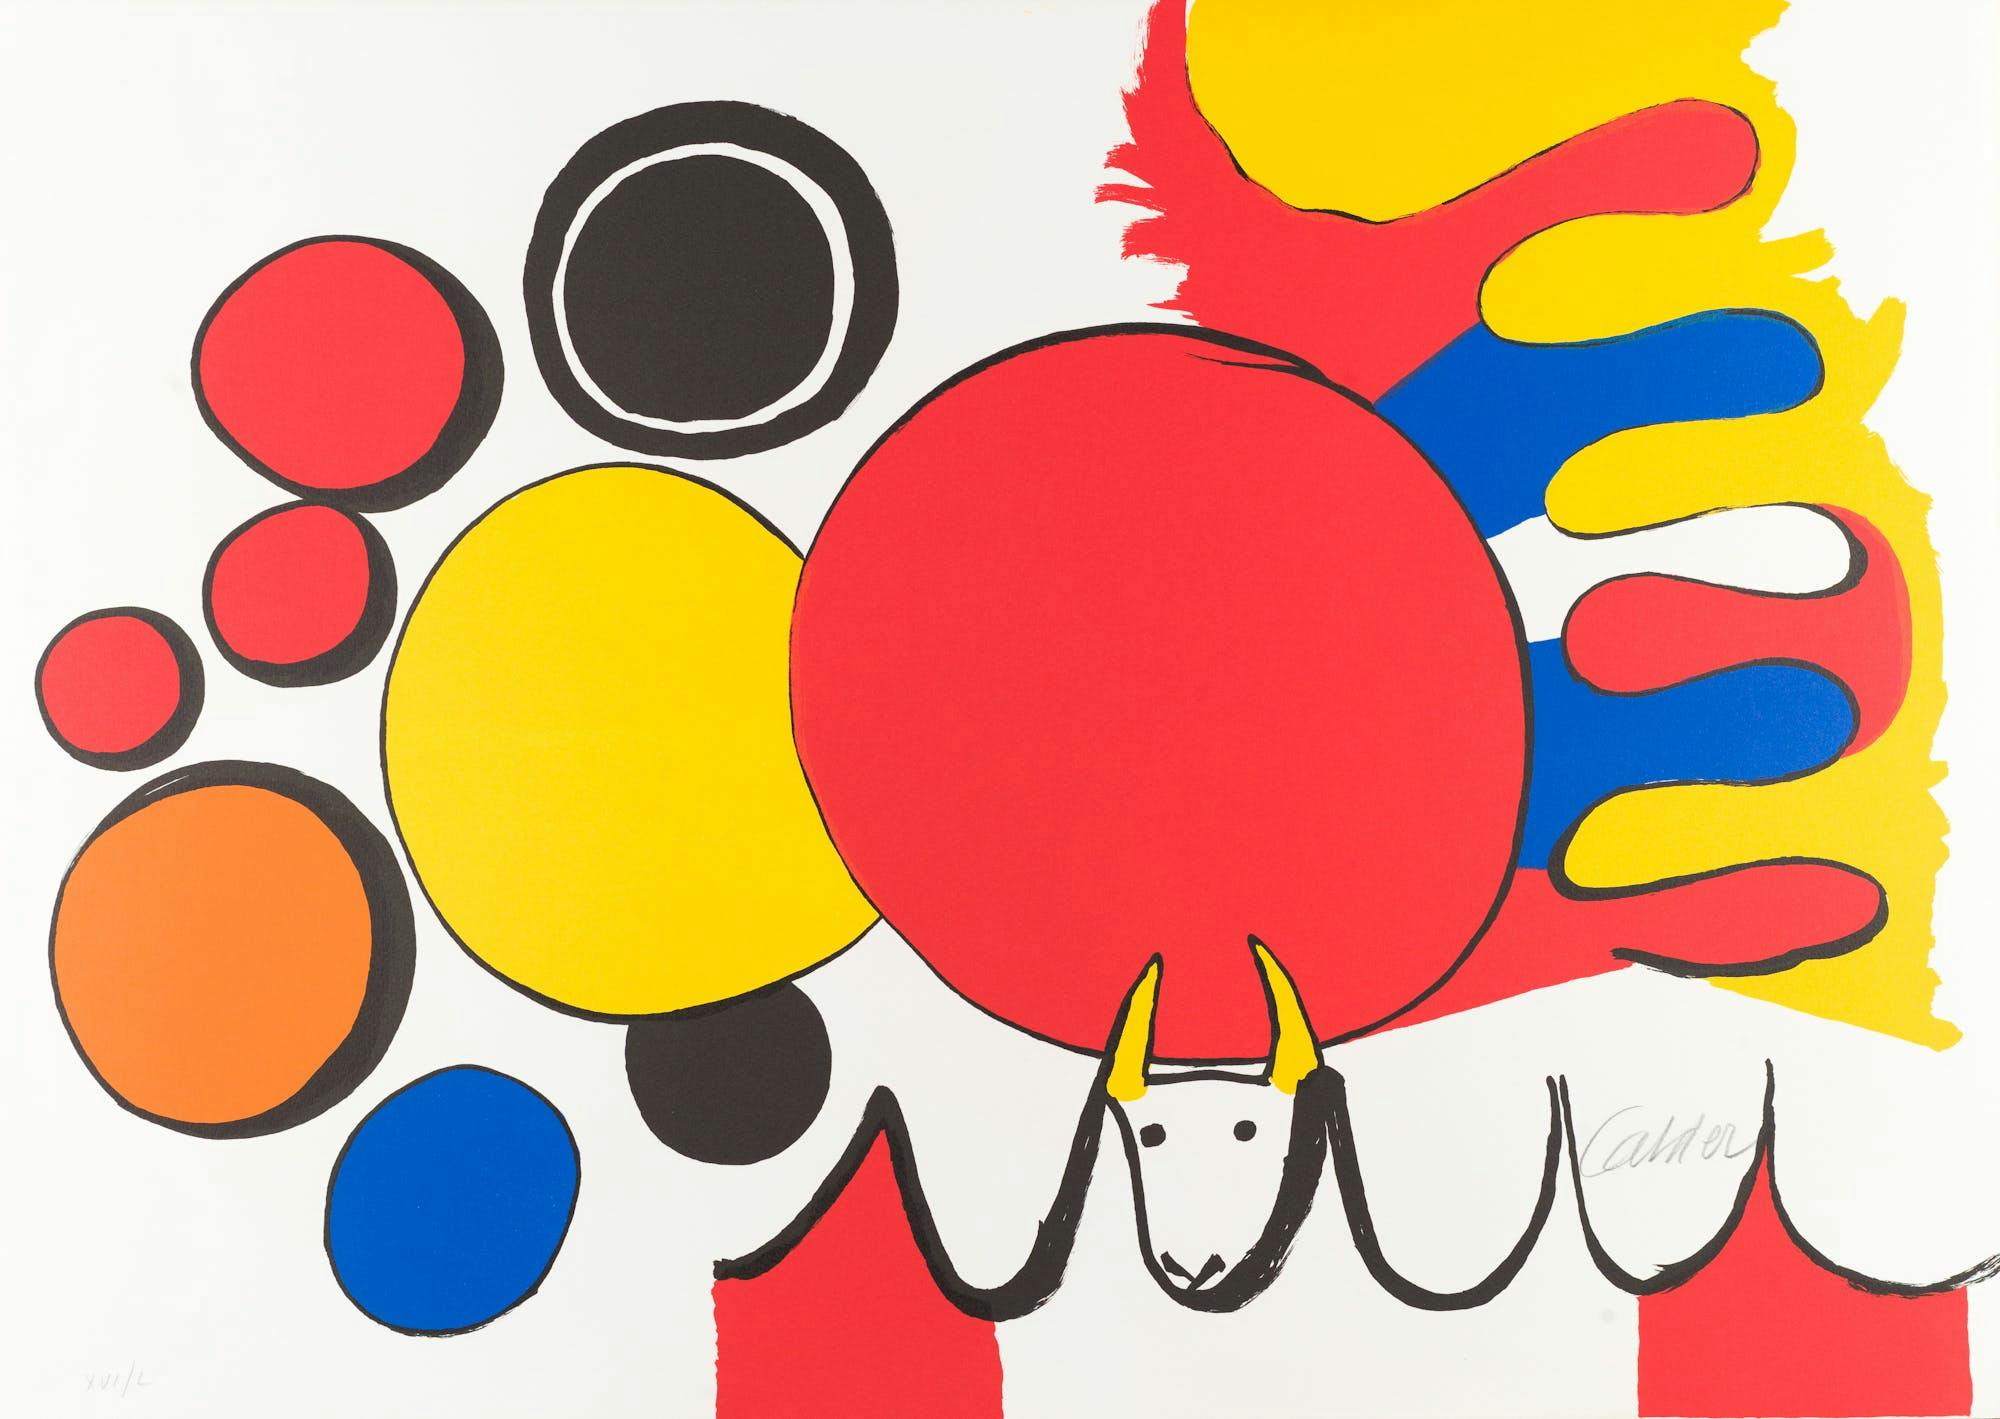 Poemas para mirar by Alexander Calder